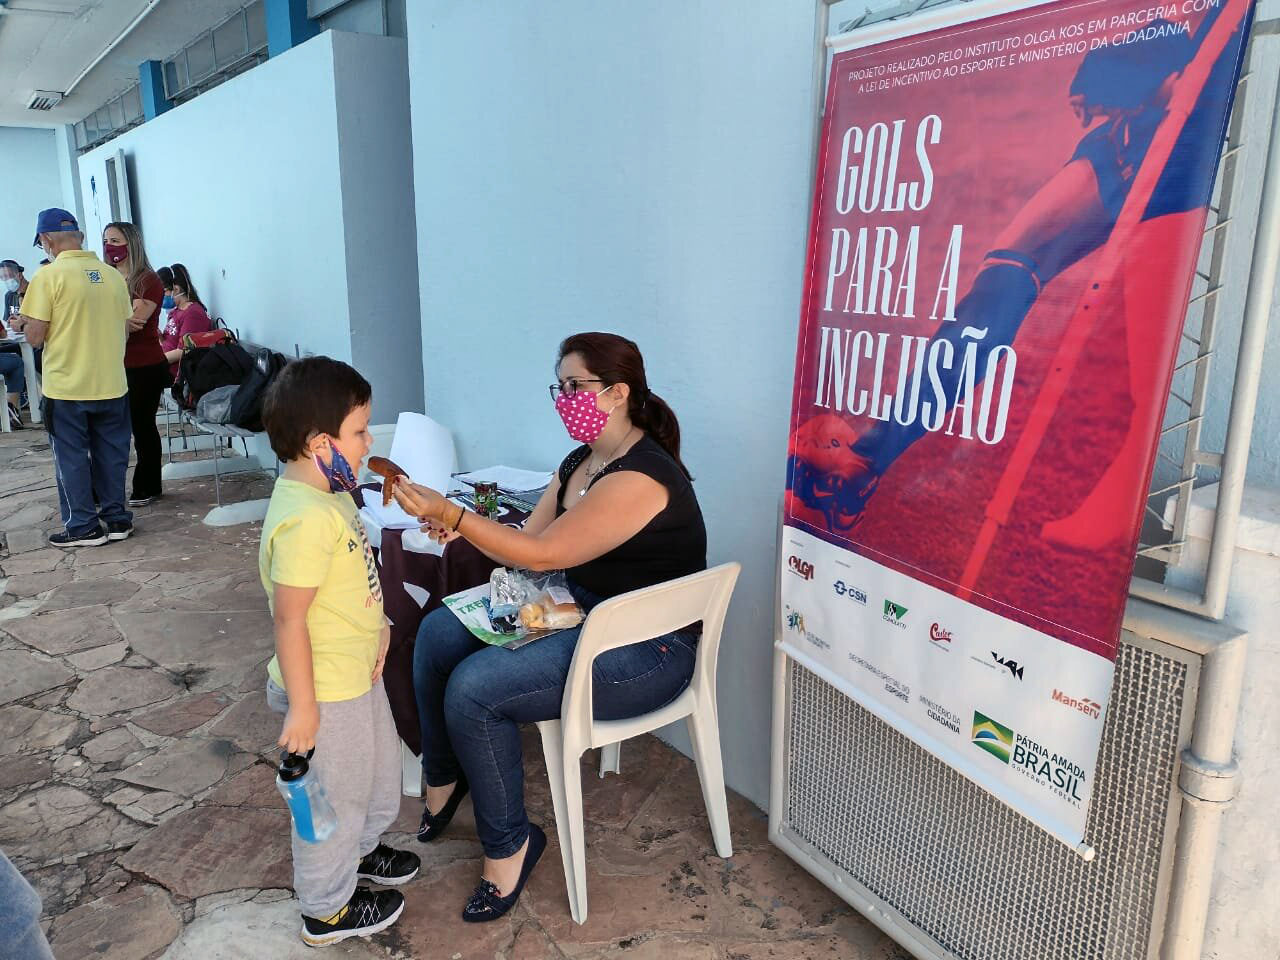 Mãe dá bolinho ao seu filho enquanto aguarda finalização do processo de inscrição no Centro Esportivo Pirituba. Banner o "Gols para Inclusão" aparece à direita.